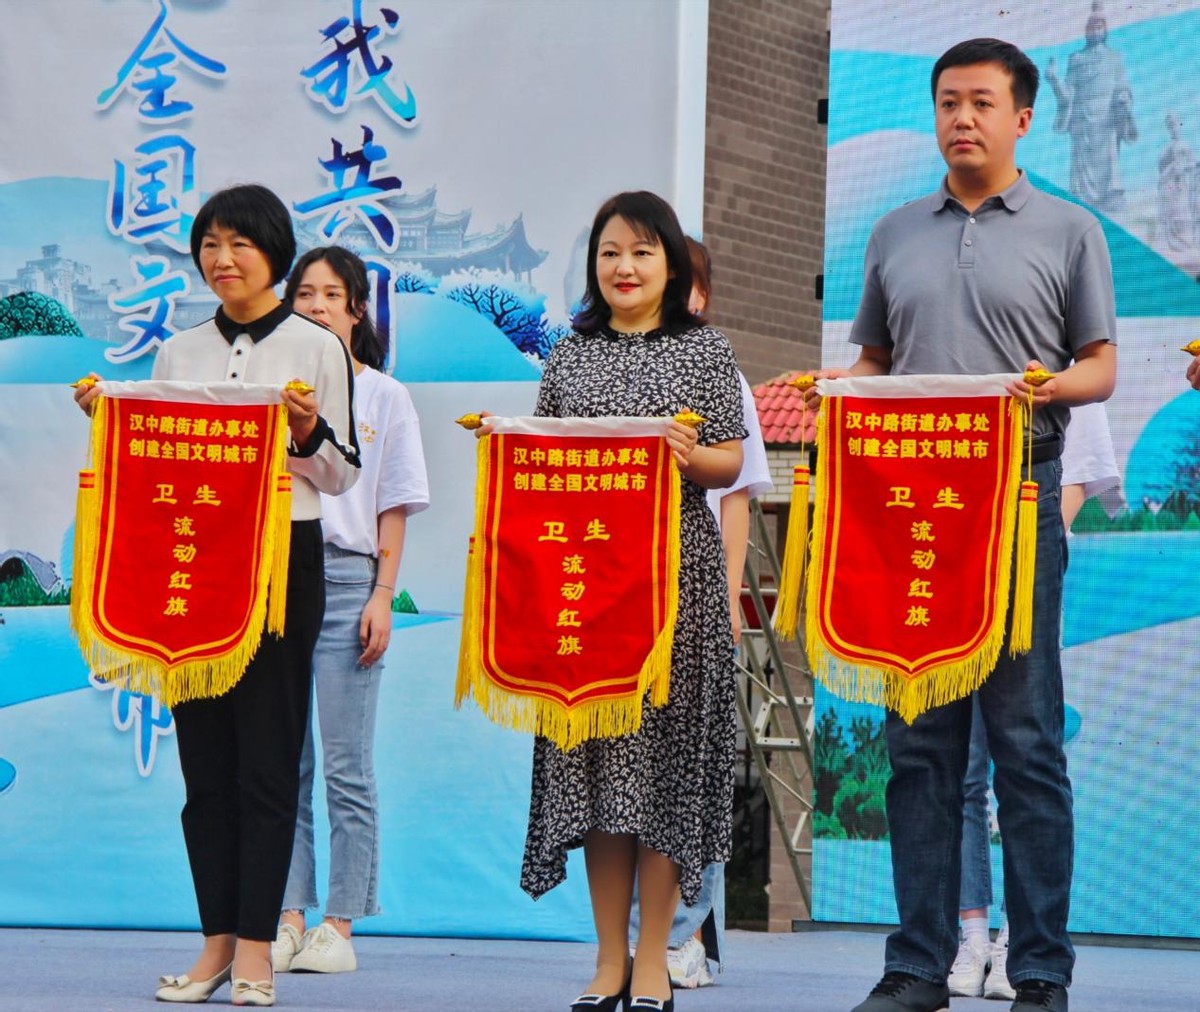 汉中市口腔医院荣获汉中首批“创建文明城市卫生流动红旗”单位